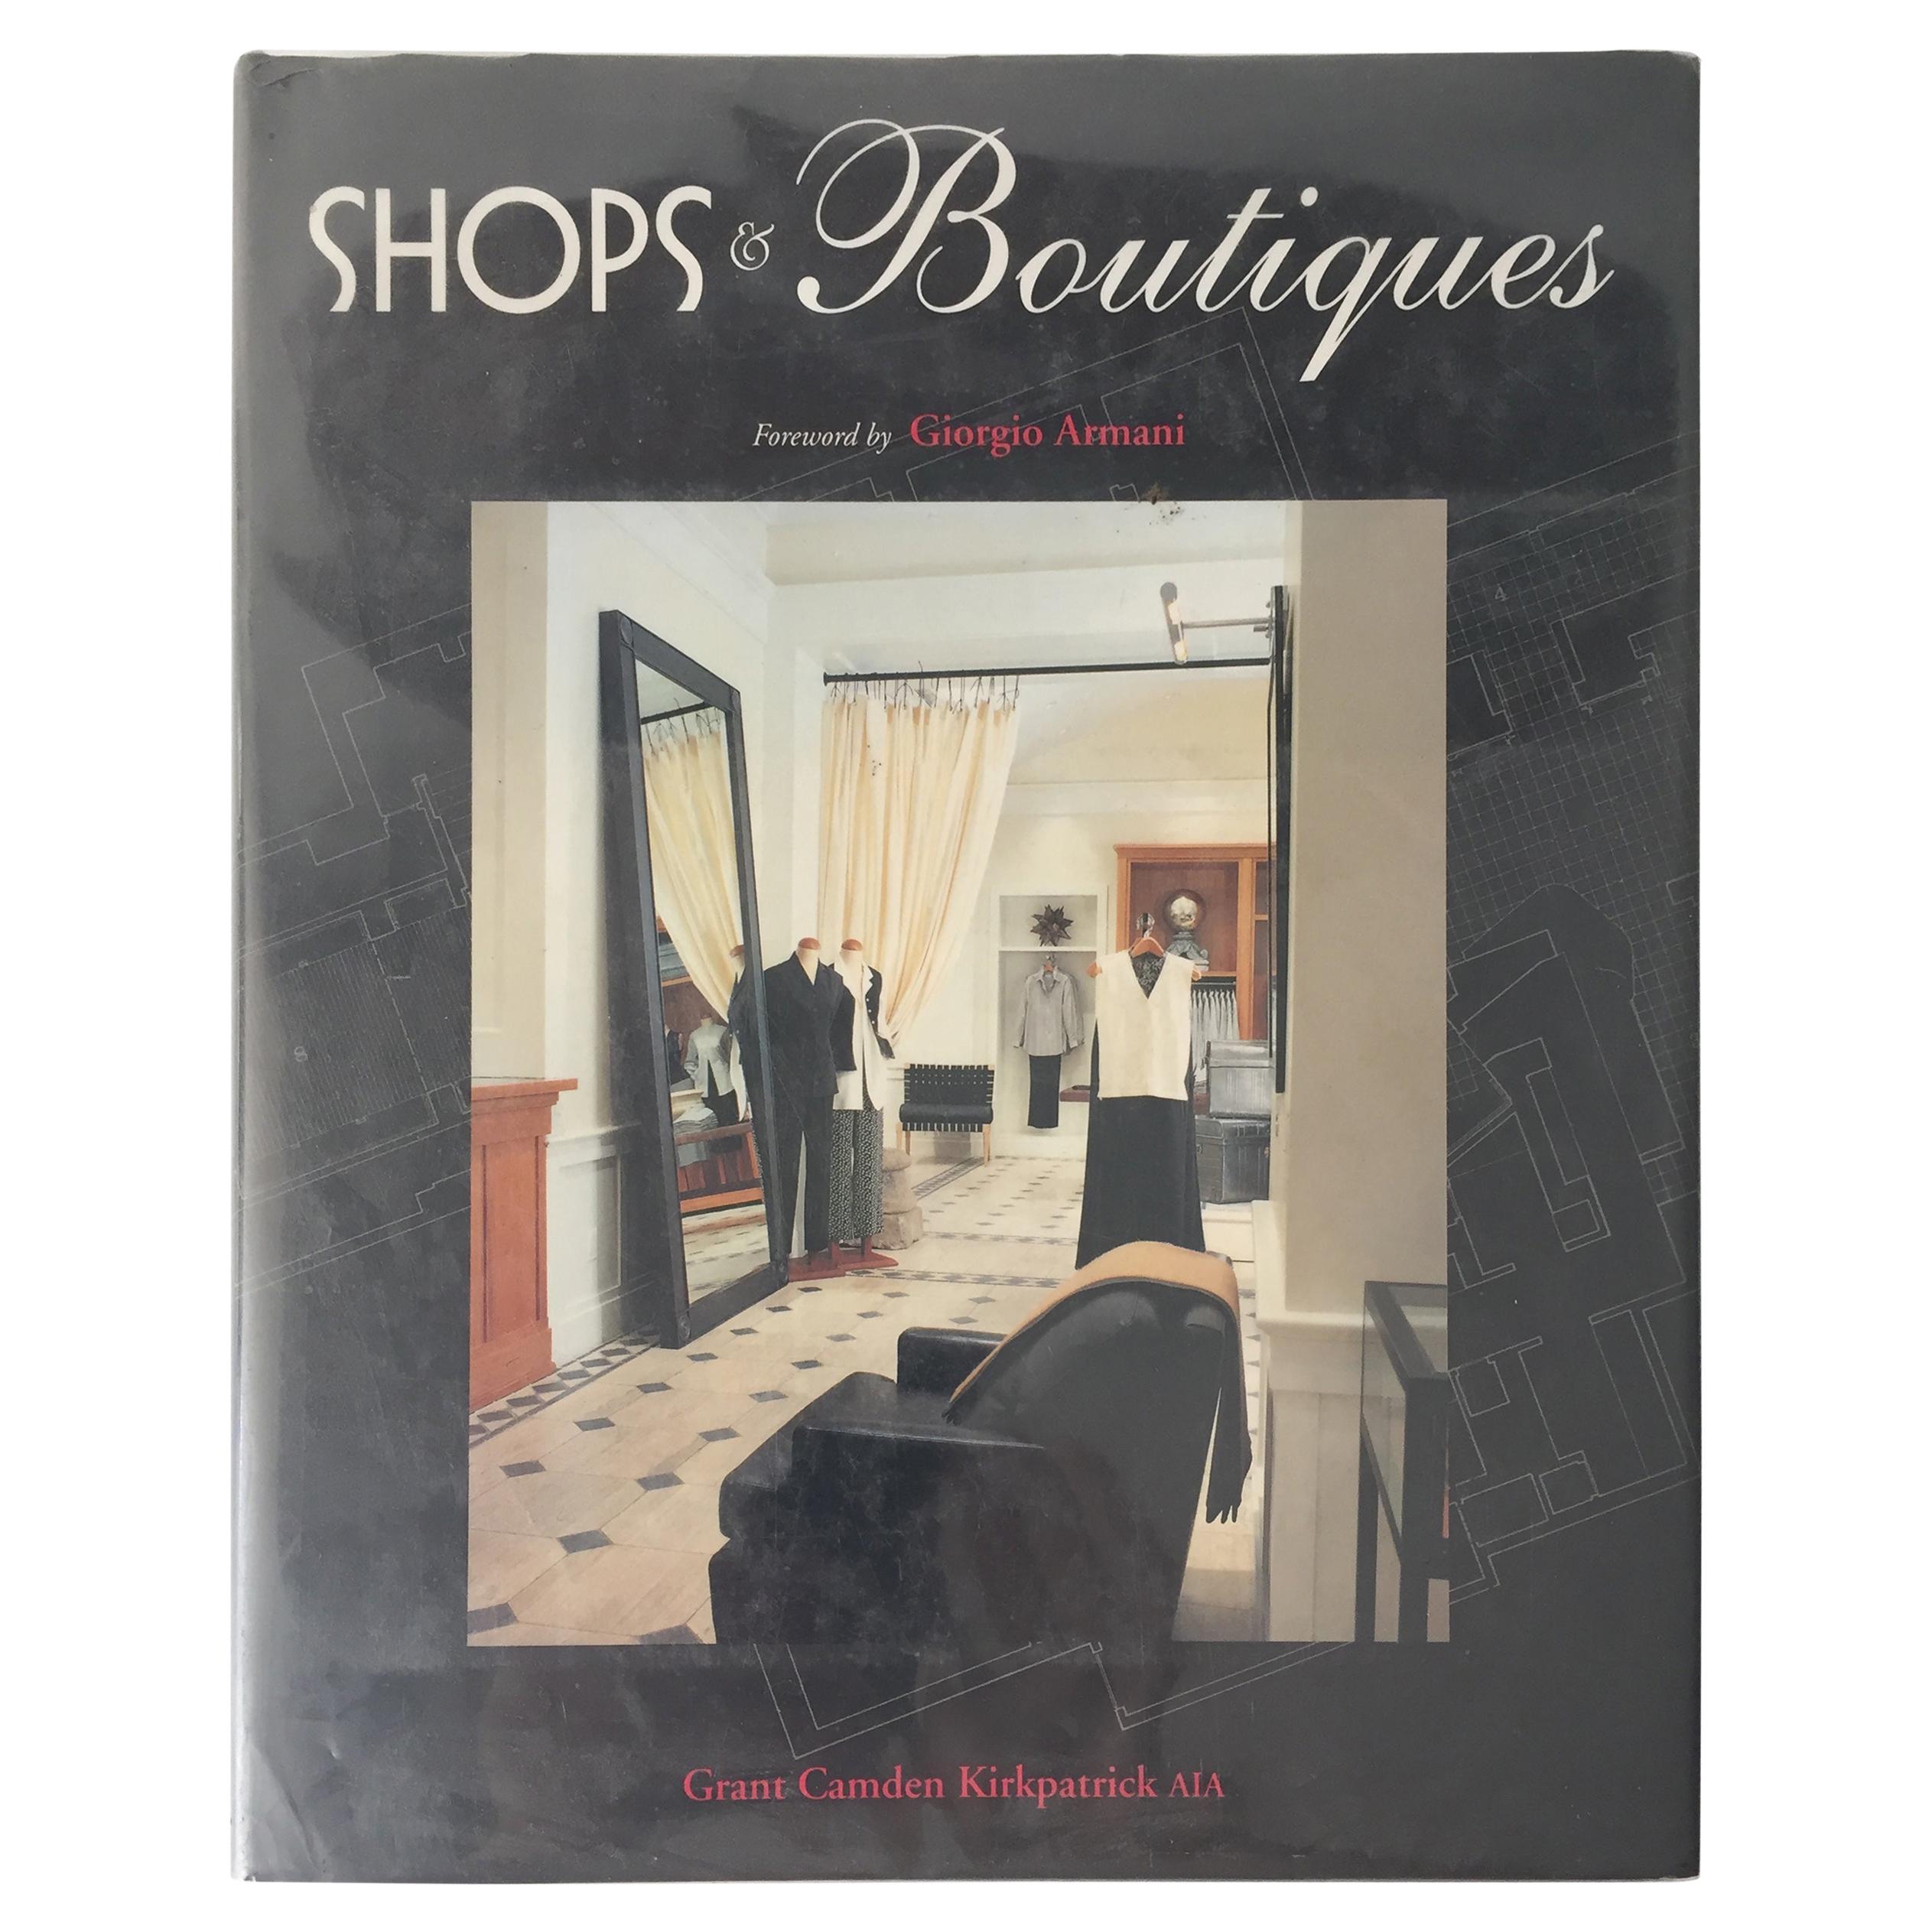 Shops & Boutiques, Foreword von Giorgio Armani von Grant Camden Kirkkpatric AIA